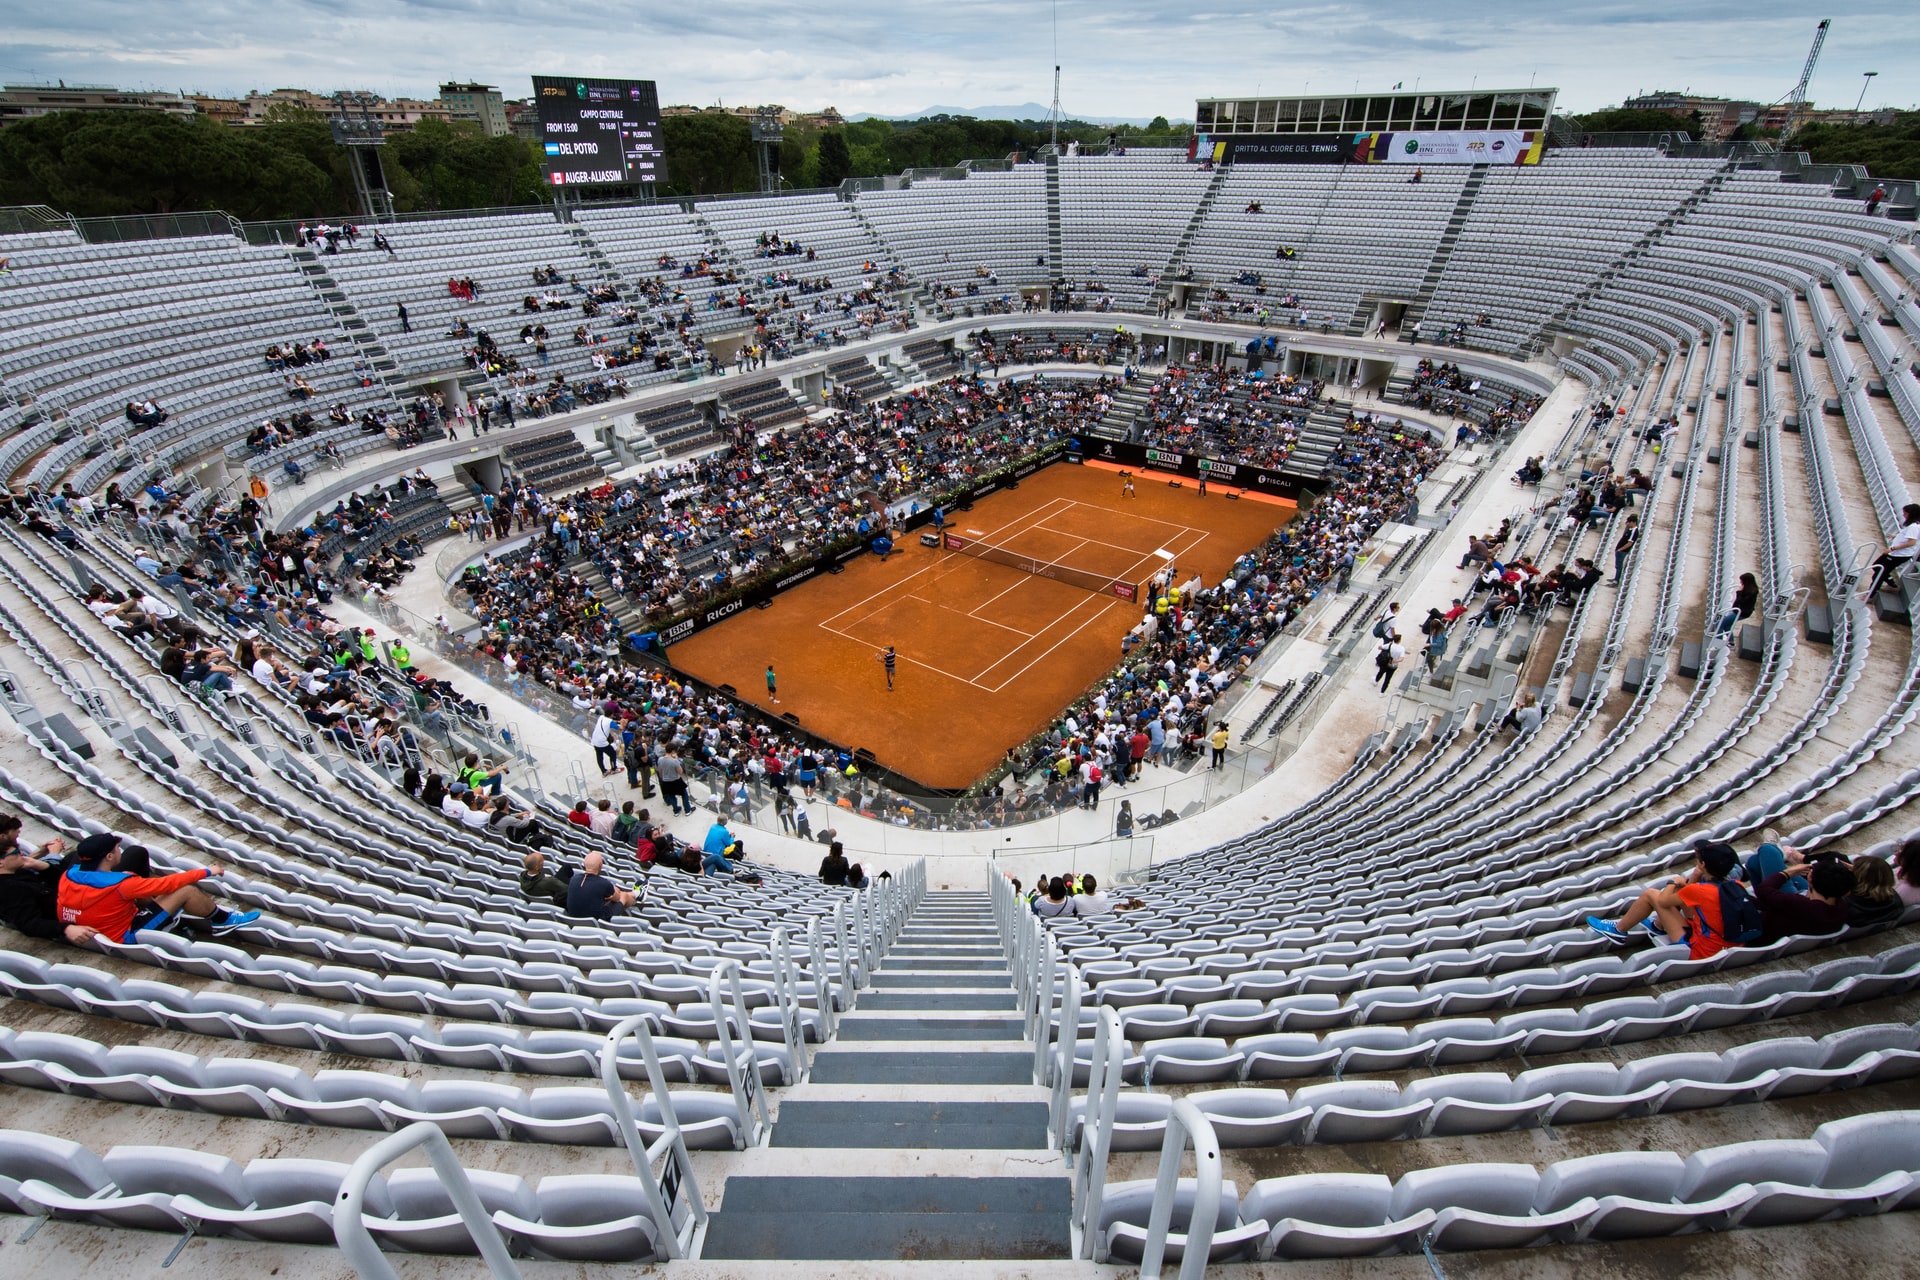 Stadio del tennis di Roma at the Foro Italico, host of the Italian Open